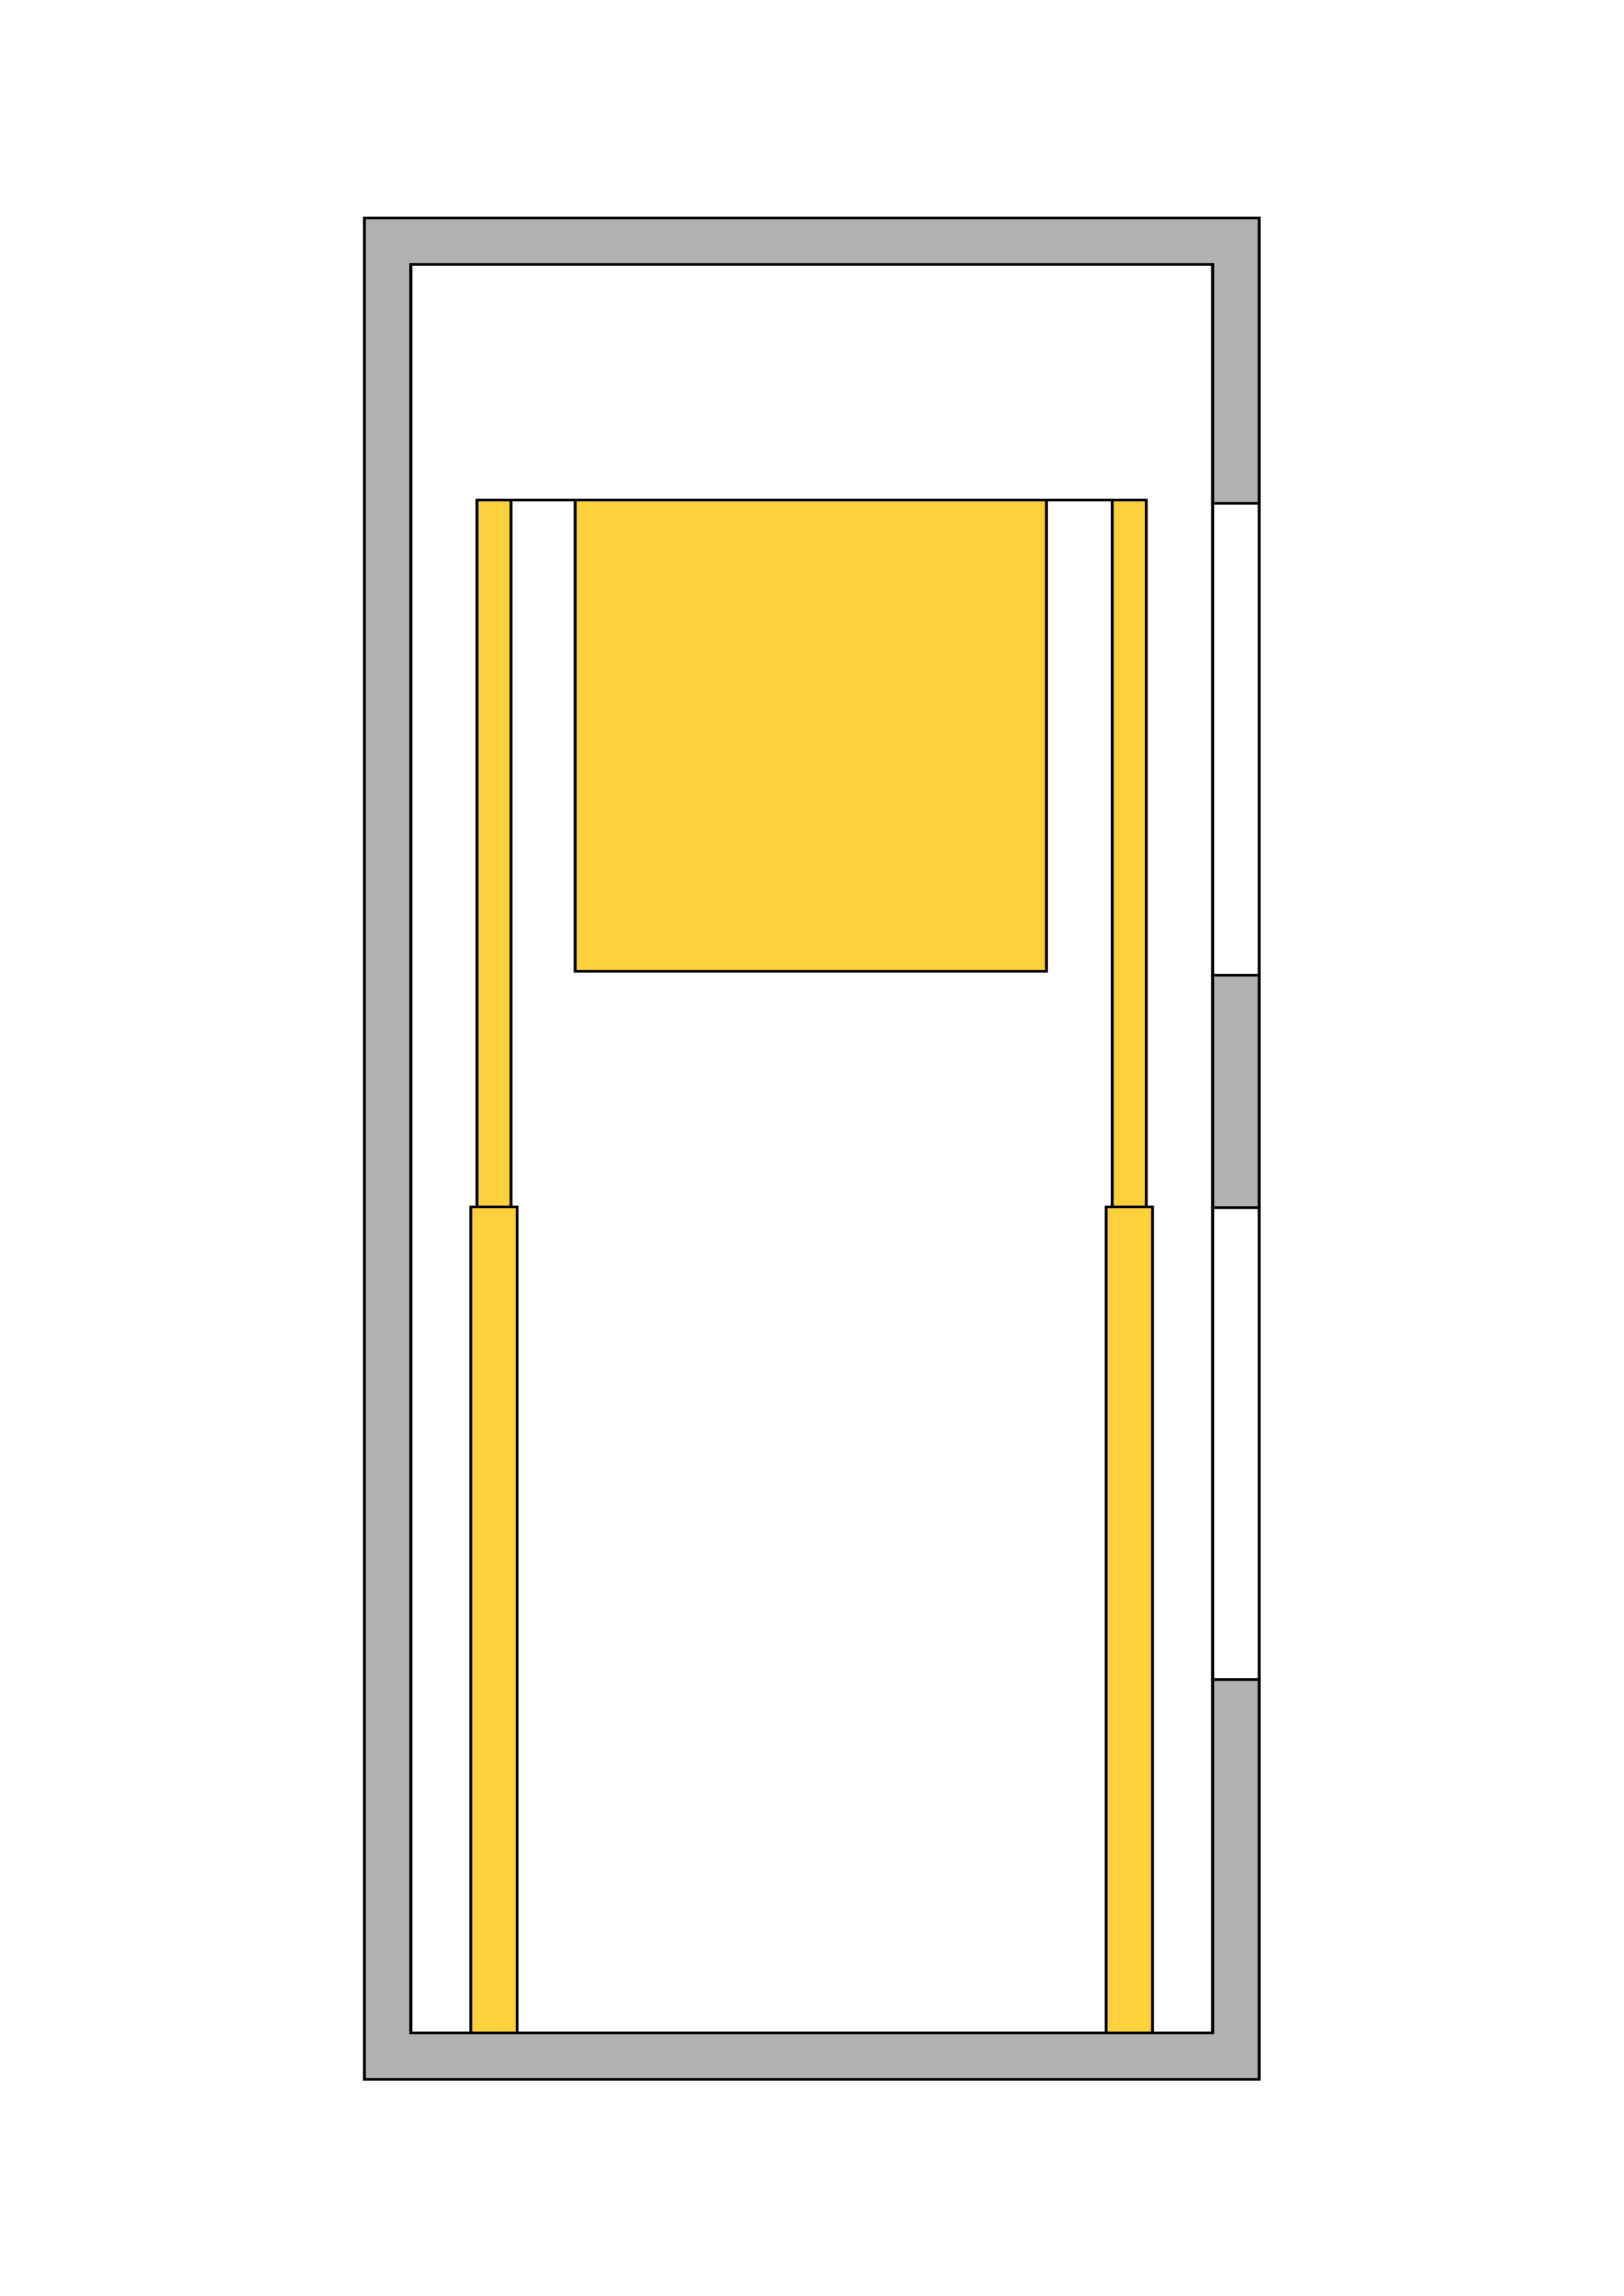 جک هیدرولیکی سفارشی ، دو جک کنار مستقیم در آسانسور هیدرولیکی ،جک تسلکوپی ، جک هیدرولیک دو طرفه